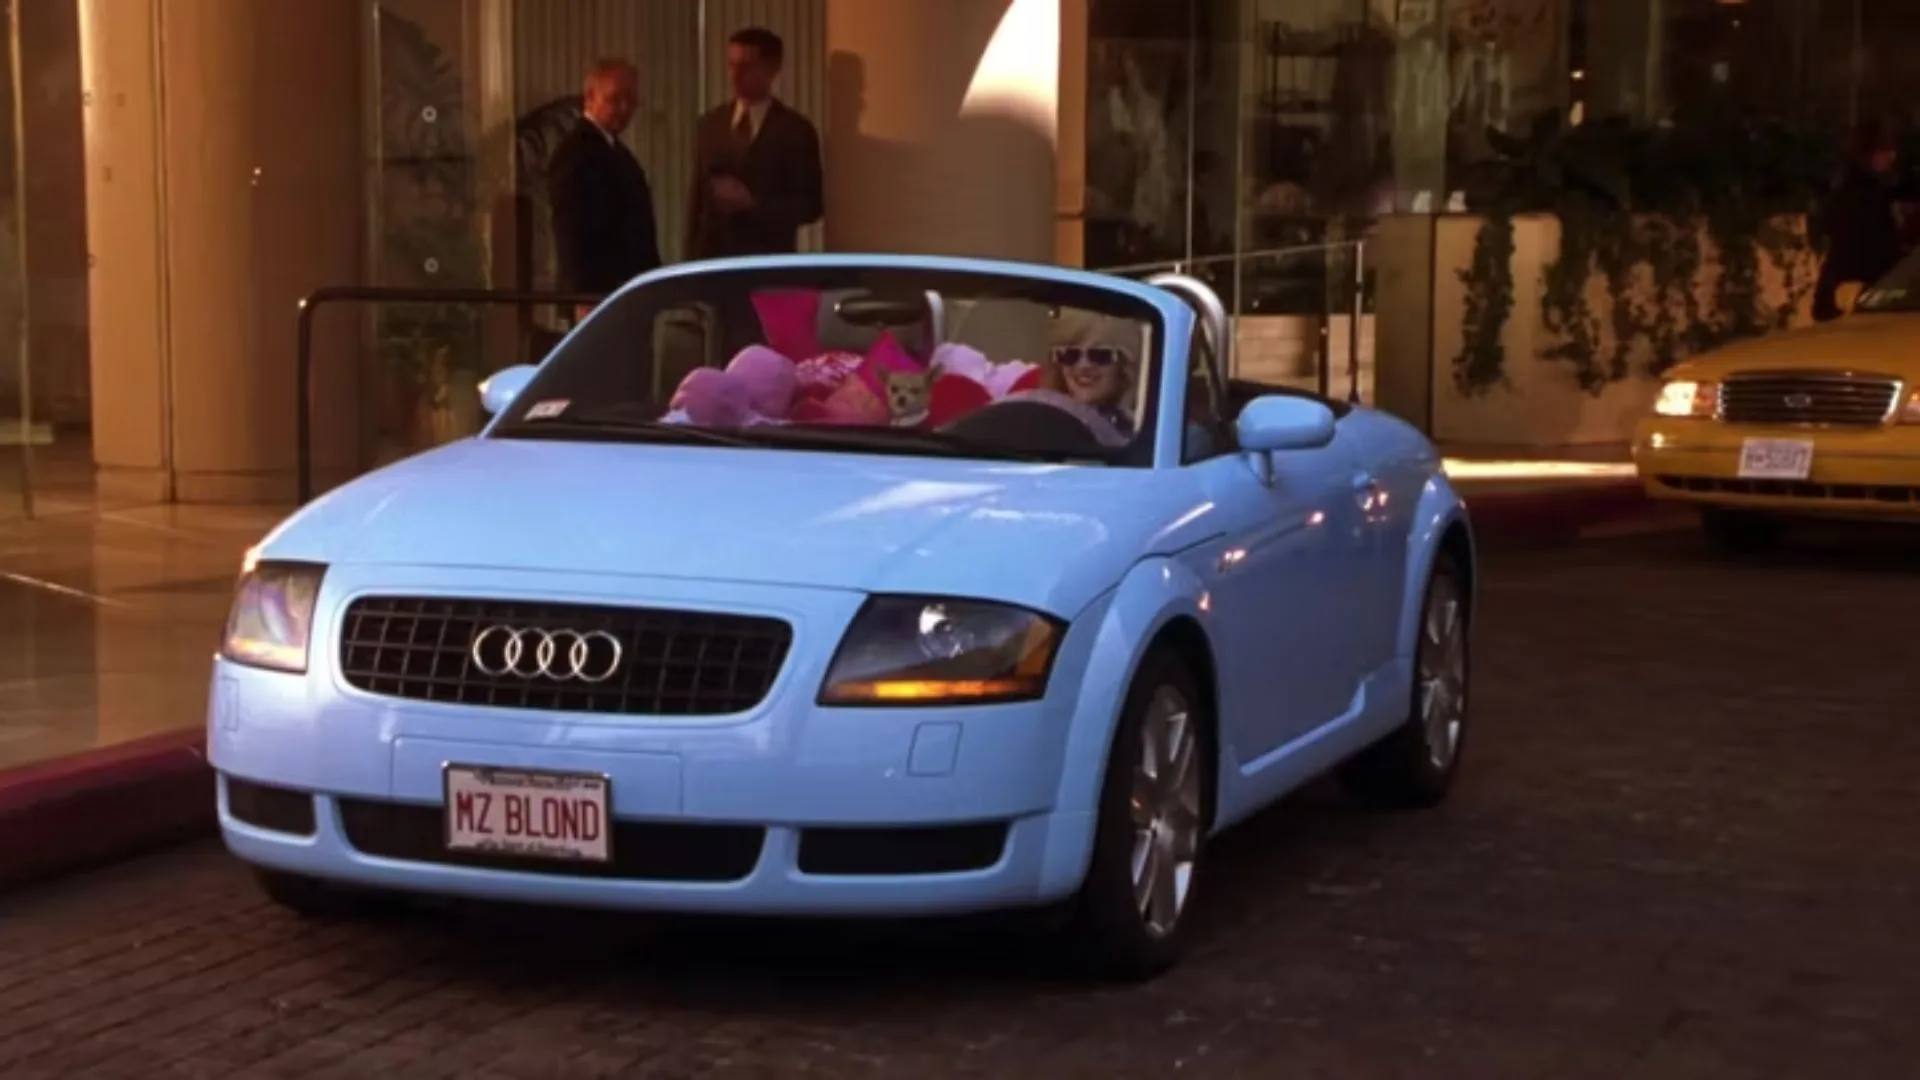 En Legalmente rubia 2 Elle Woods aparece en un Audi a su medida en estilo y comodidad